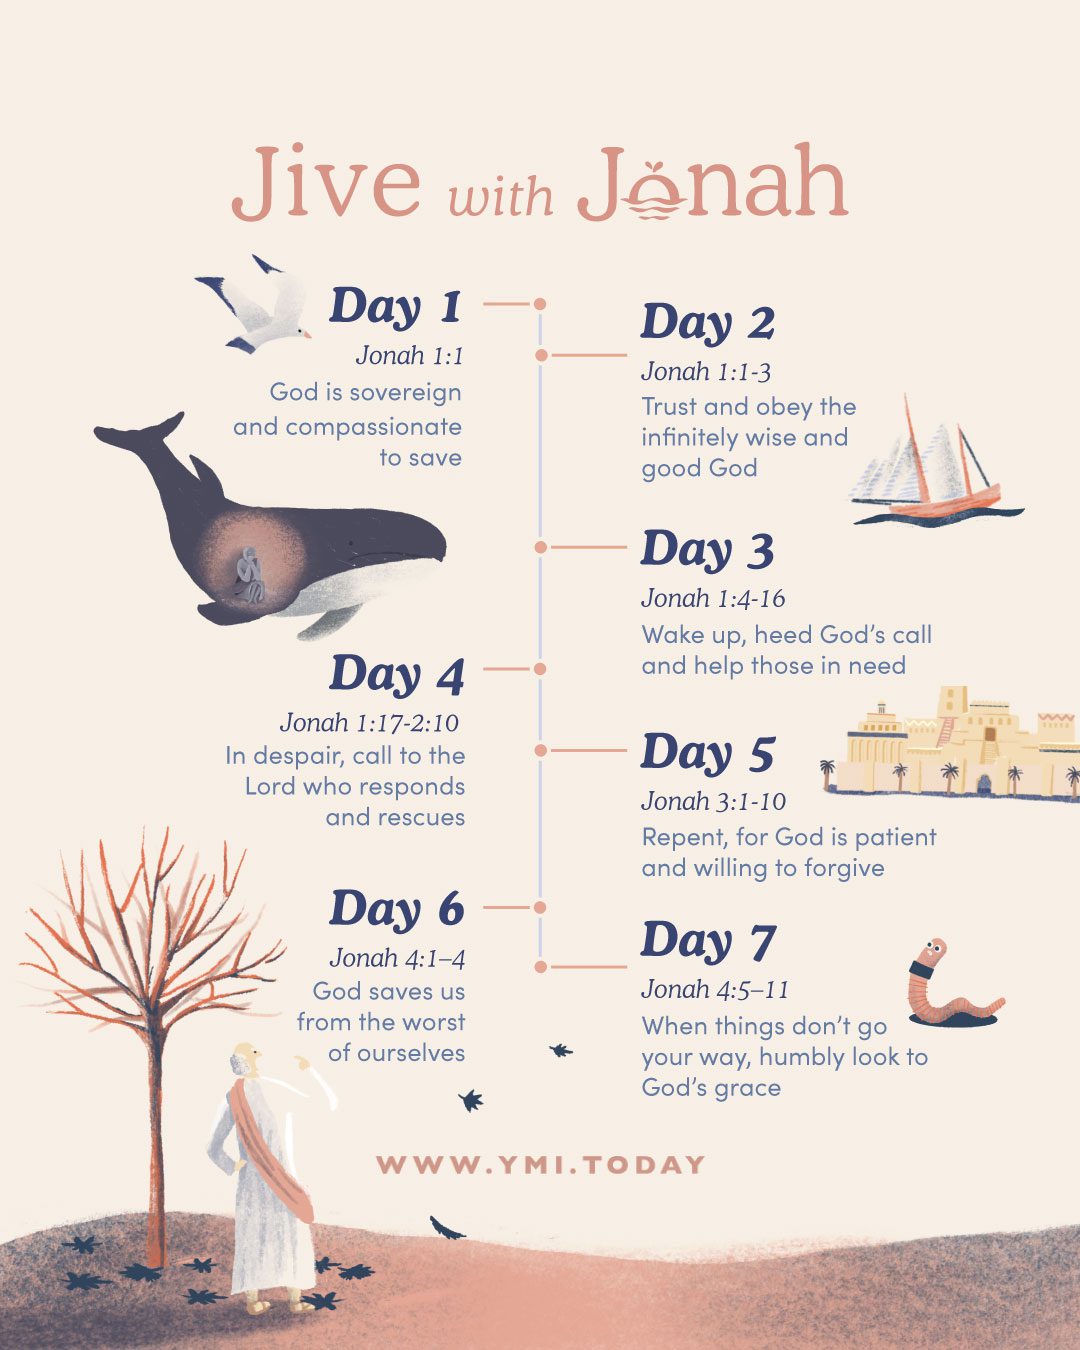 Jive with Jonah A Short Summary